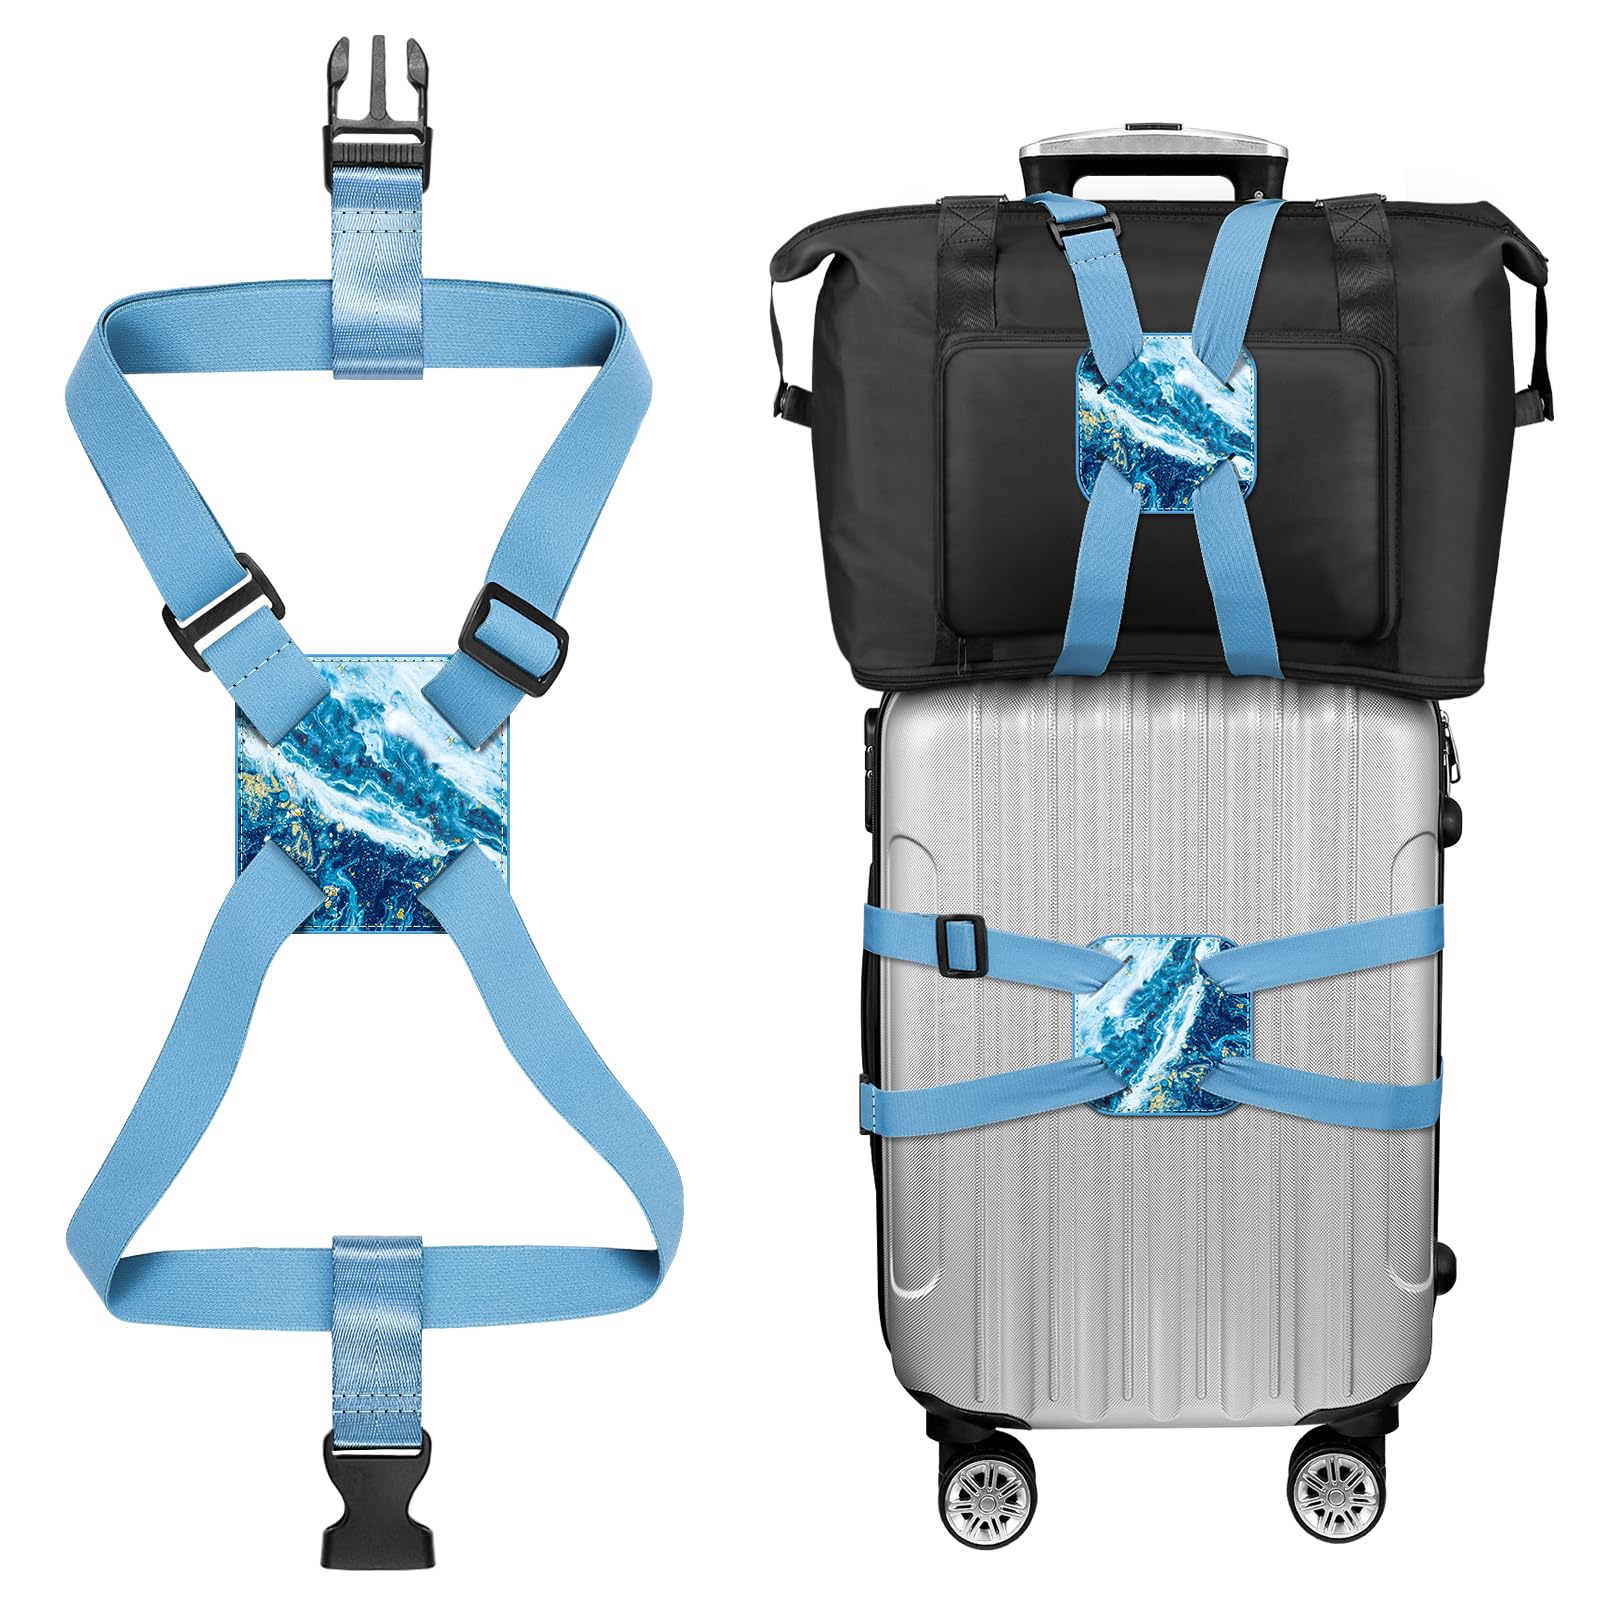 Koffergurt Kofferband, FINPAC Verstellbarer elastischer Gepäckgurt, Bag Bungee Koffer, Reisezubehör mit Anti-Pinch-Schnalle, Koffergurt Luggage Strap für Koffer und Tasche (Meeresblau) von FINPAC